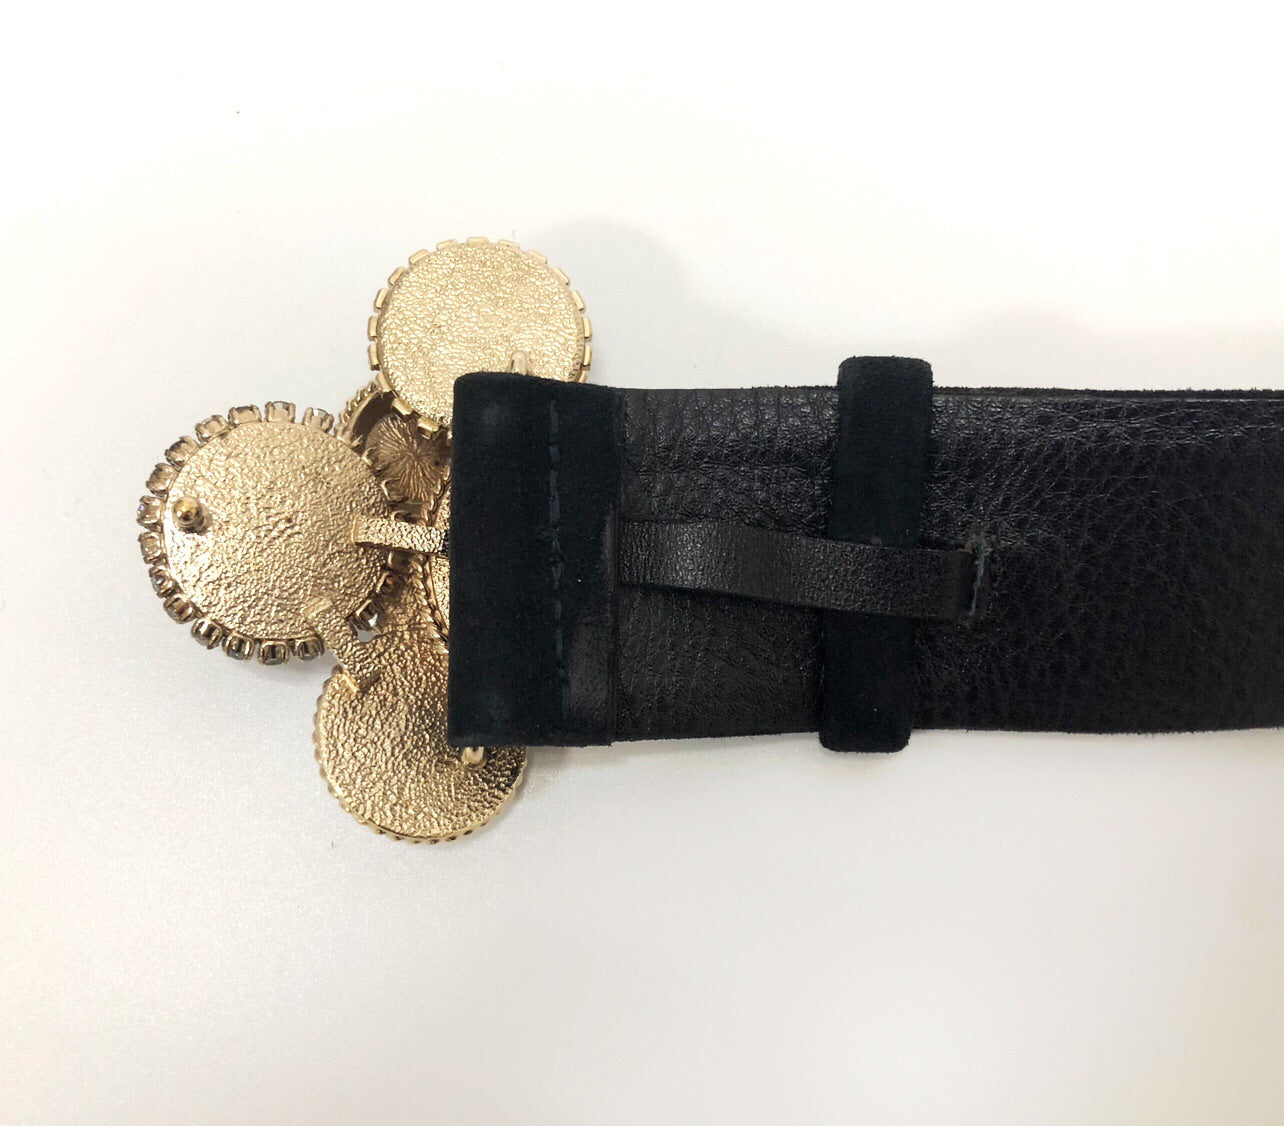 Chanel Rue Cambon Button Belt